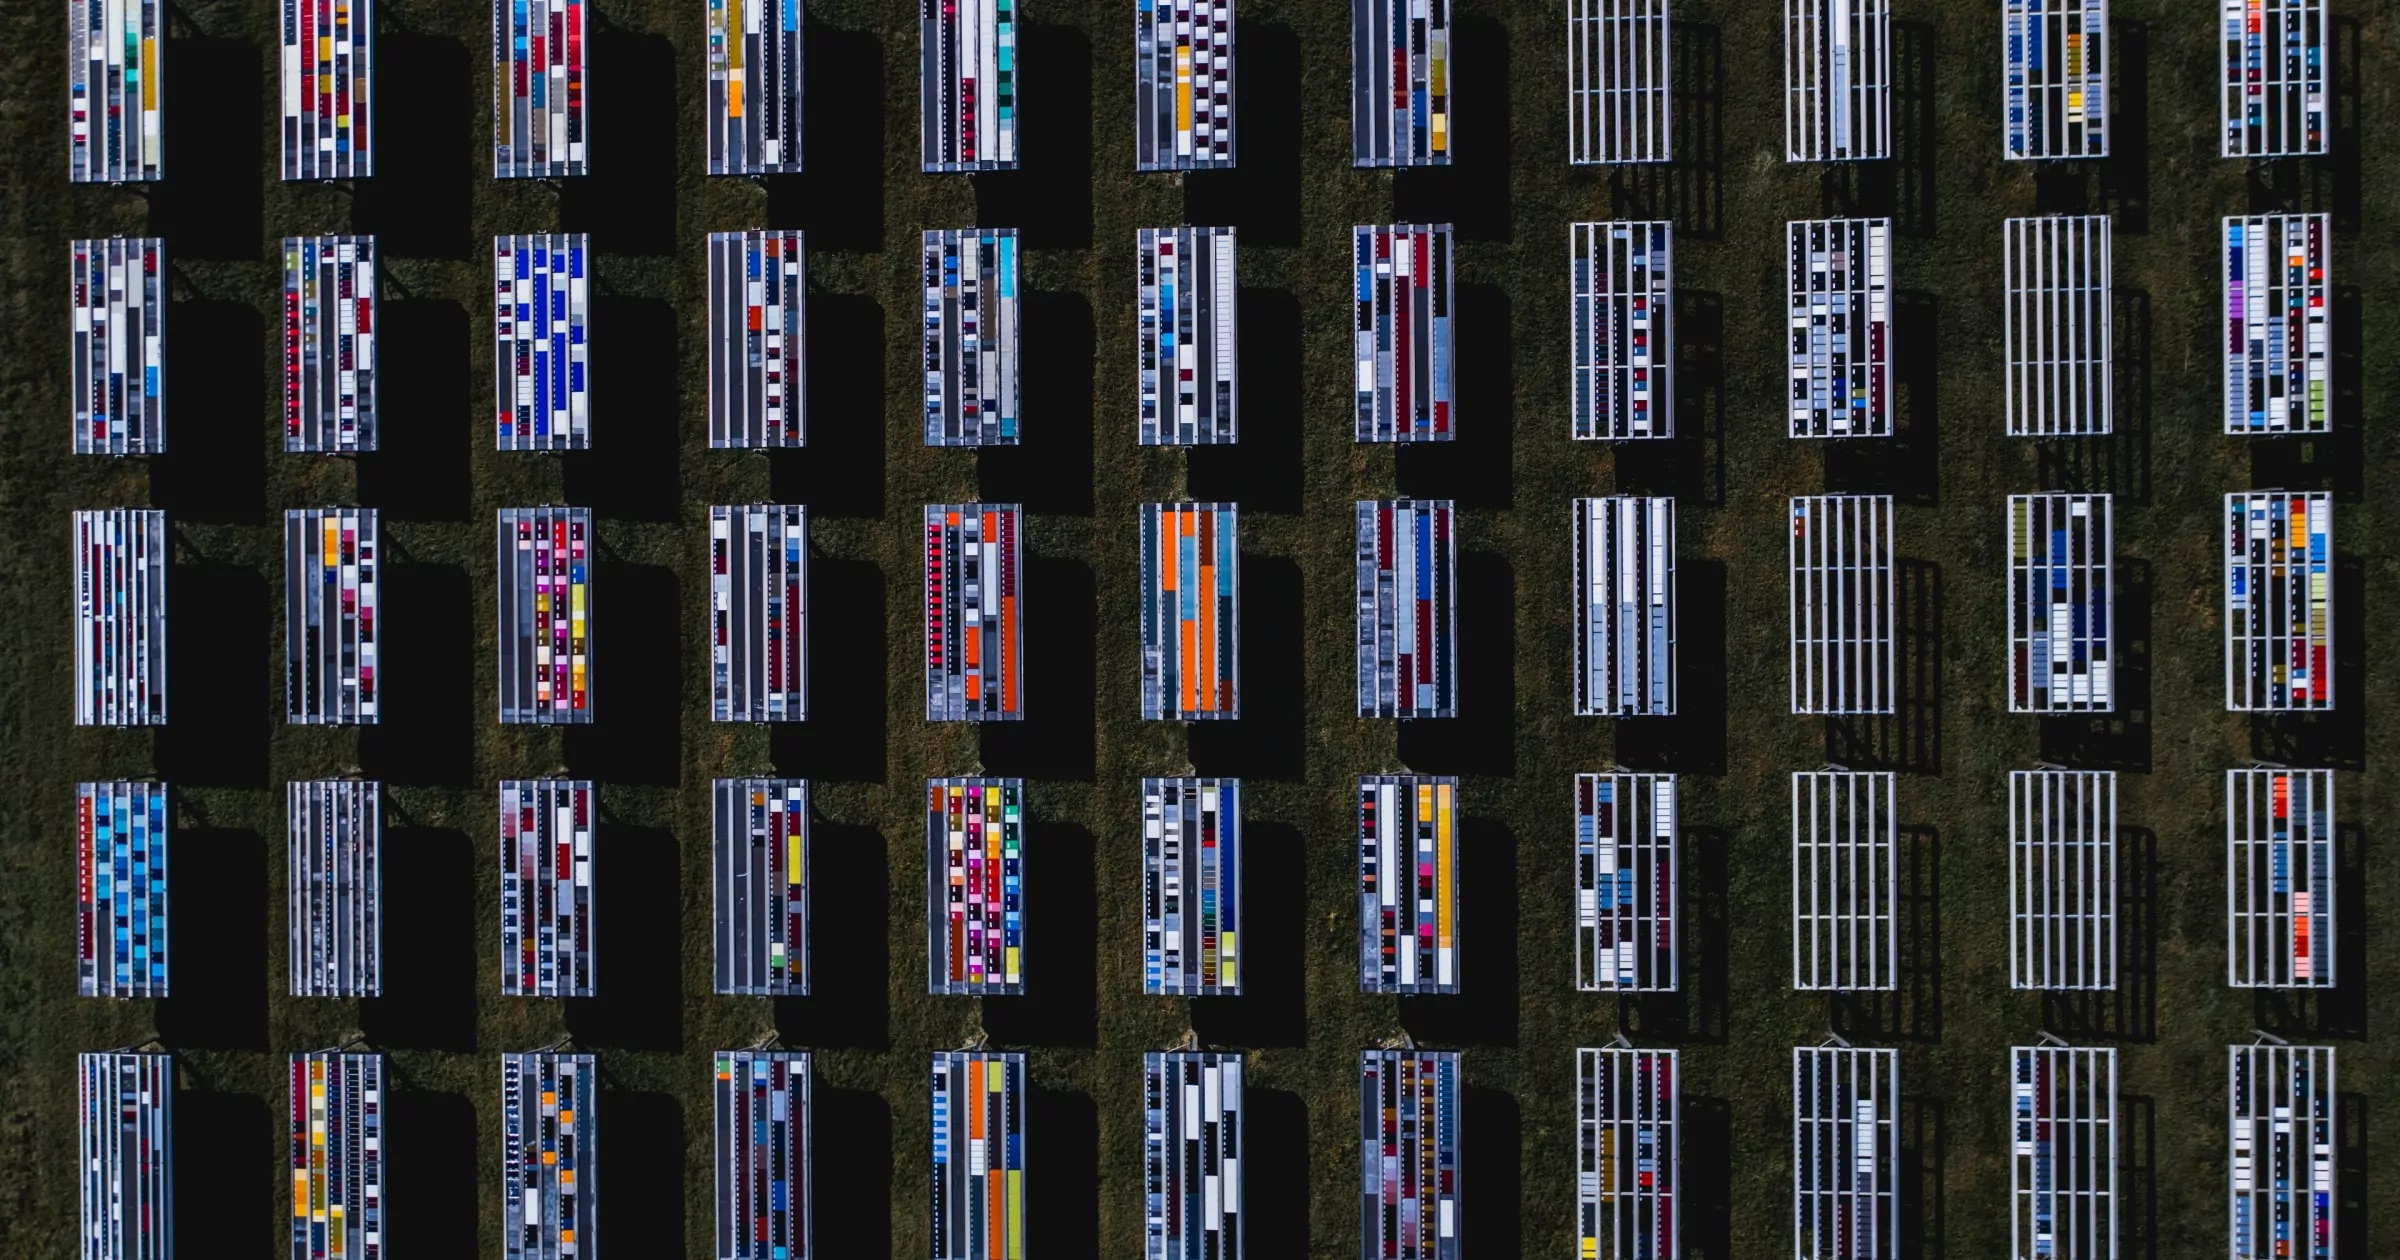 드론으로 촬영한 특이한 패턴의 태양전지판, 미국 플로리다